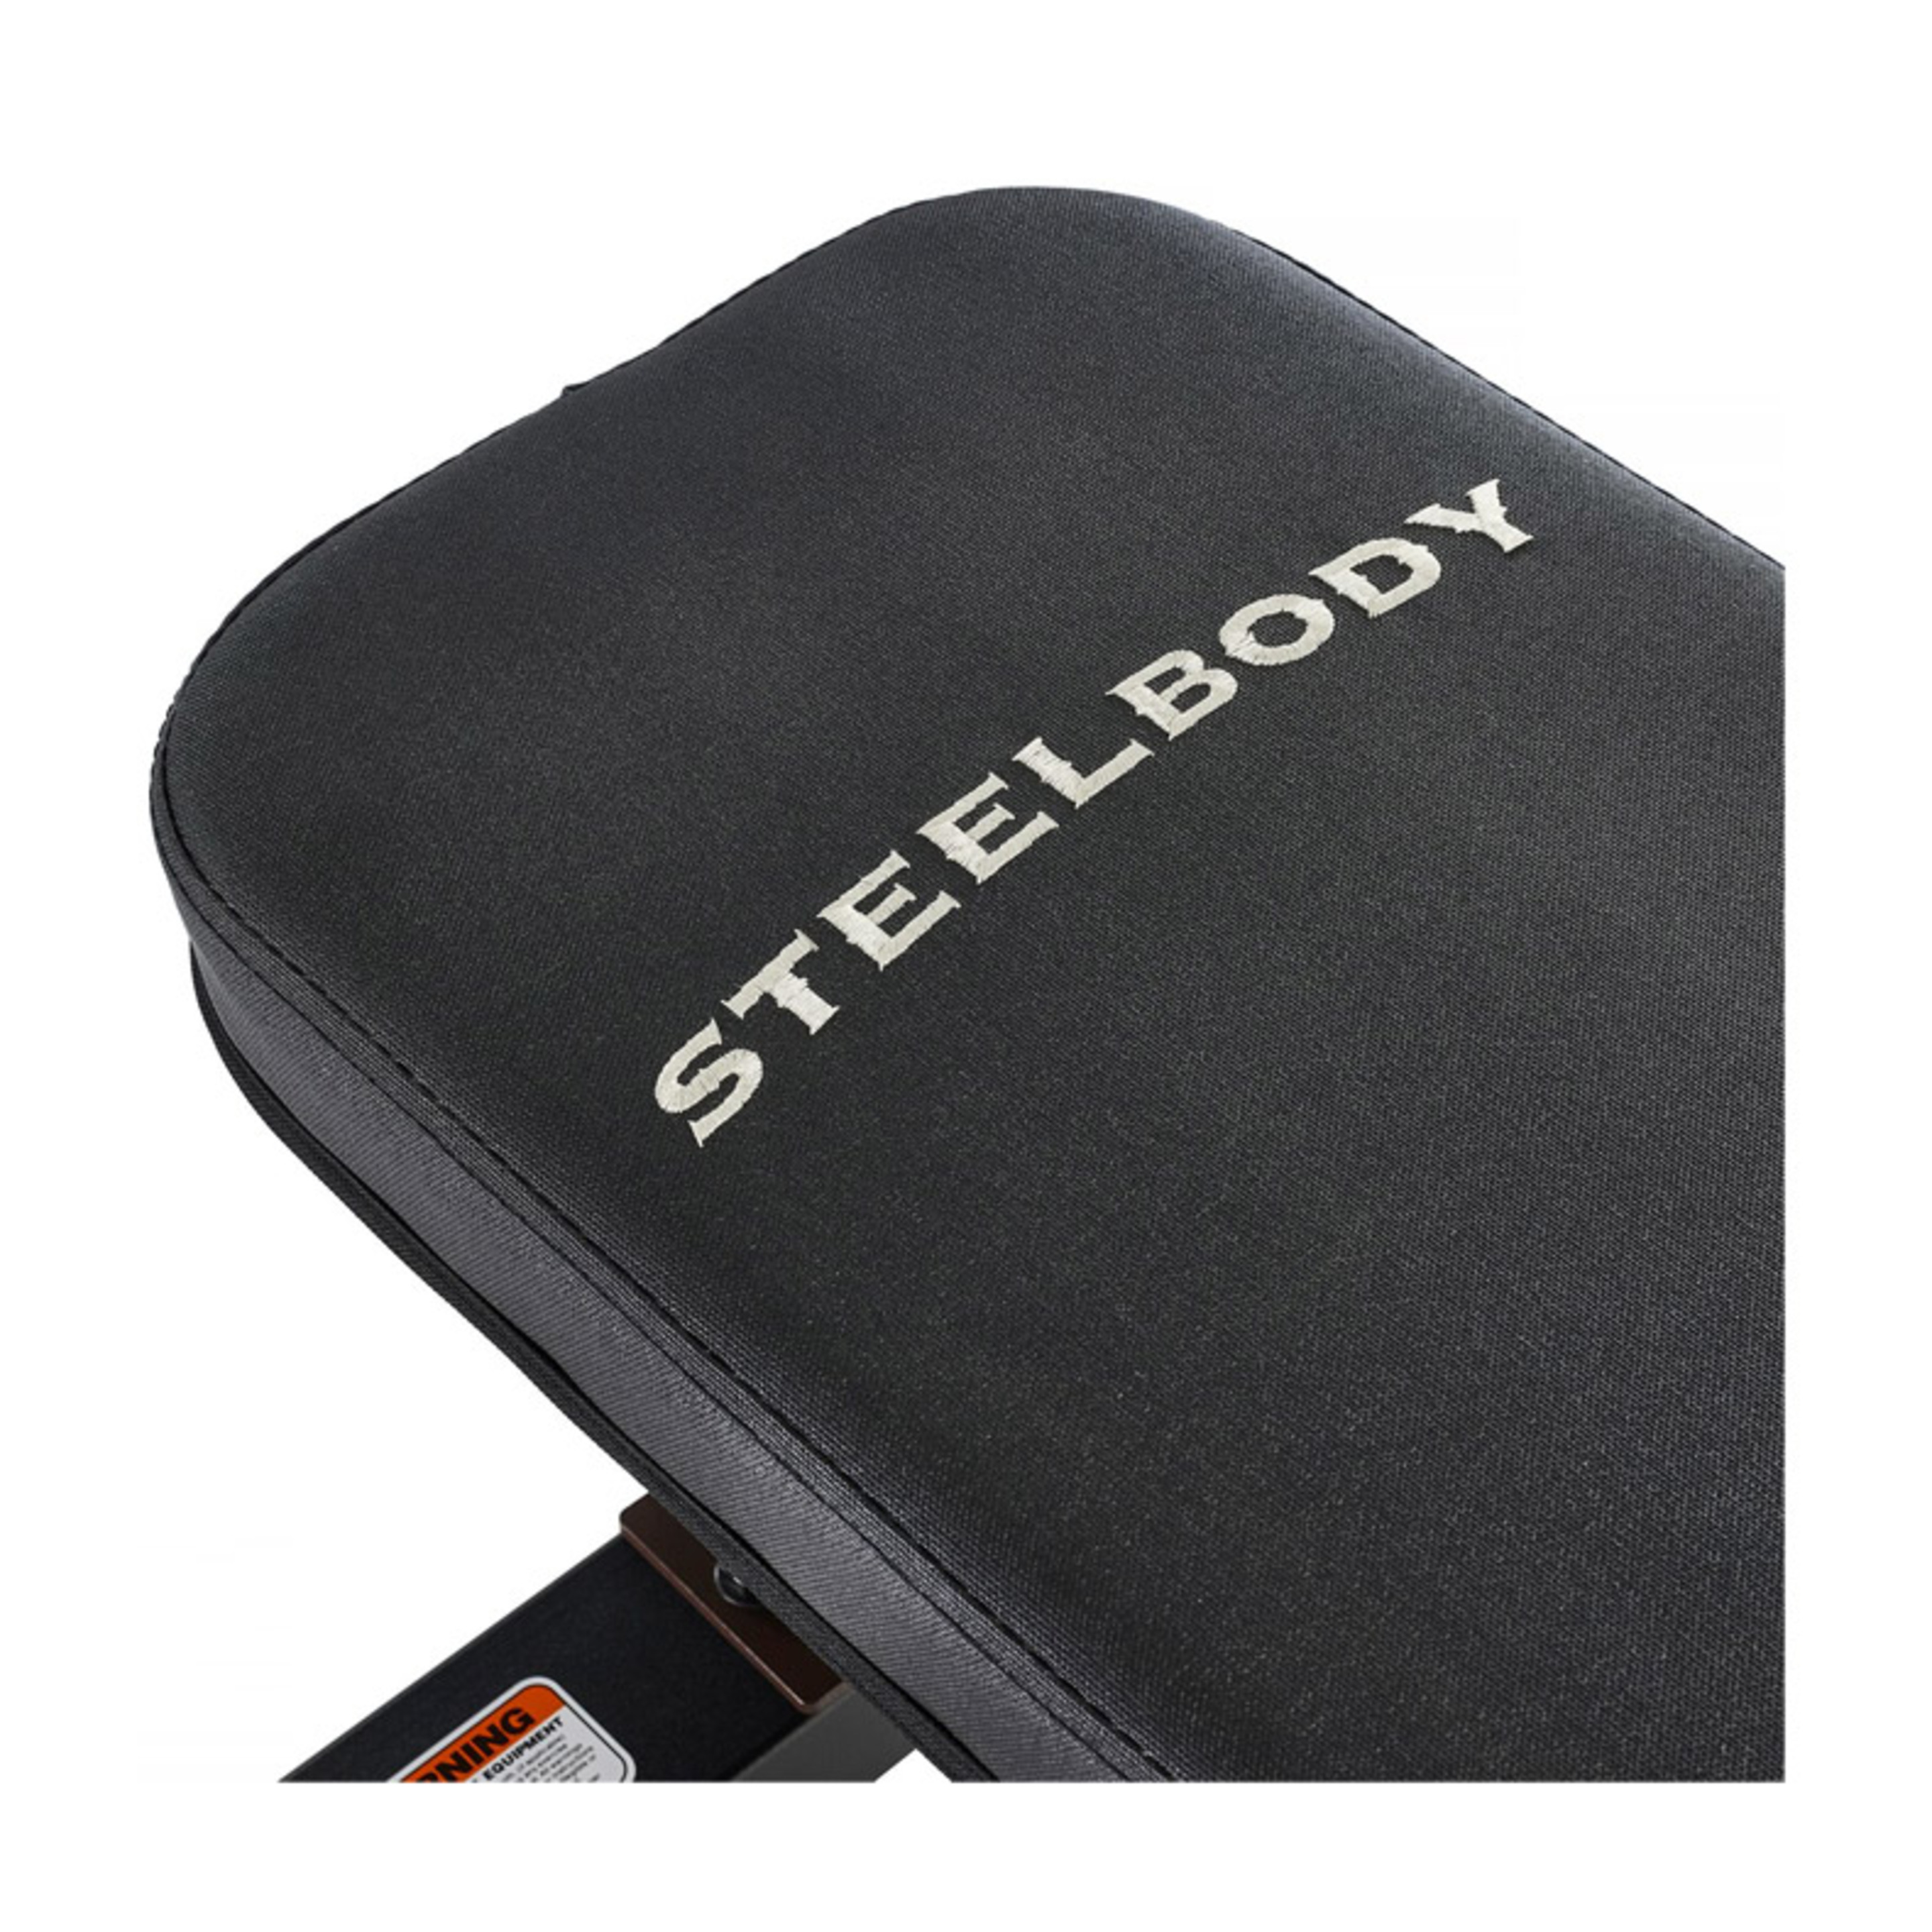 Steelbody Marcy Flat Bench Stb-10101 - Preto - Uso Semi-profissional | Sport Zone MKP